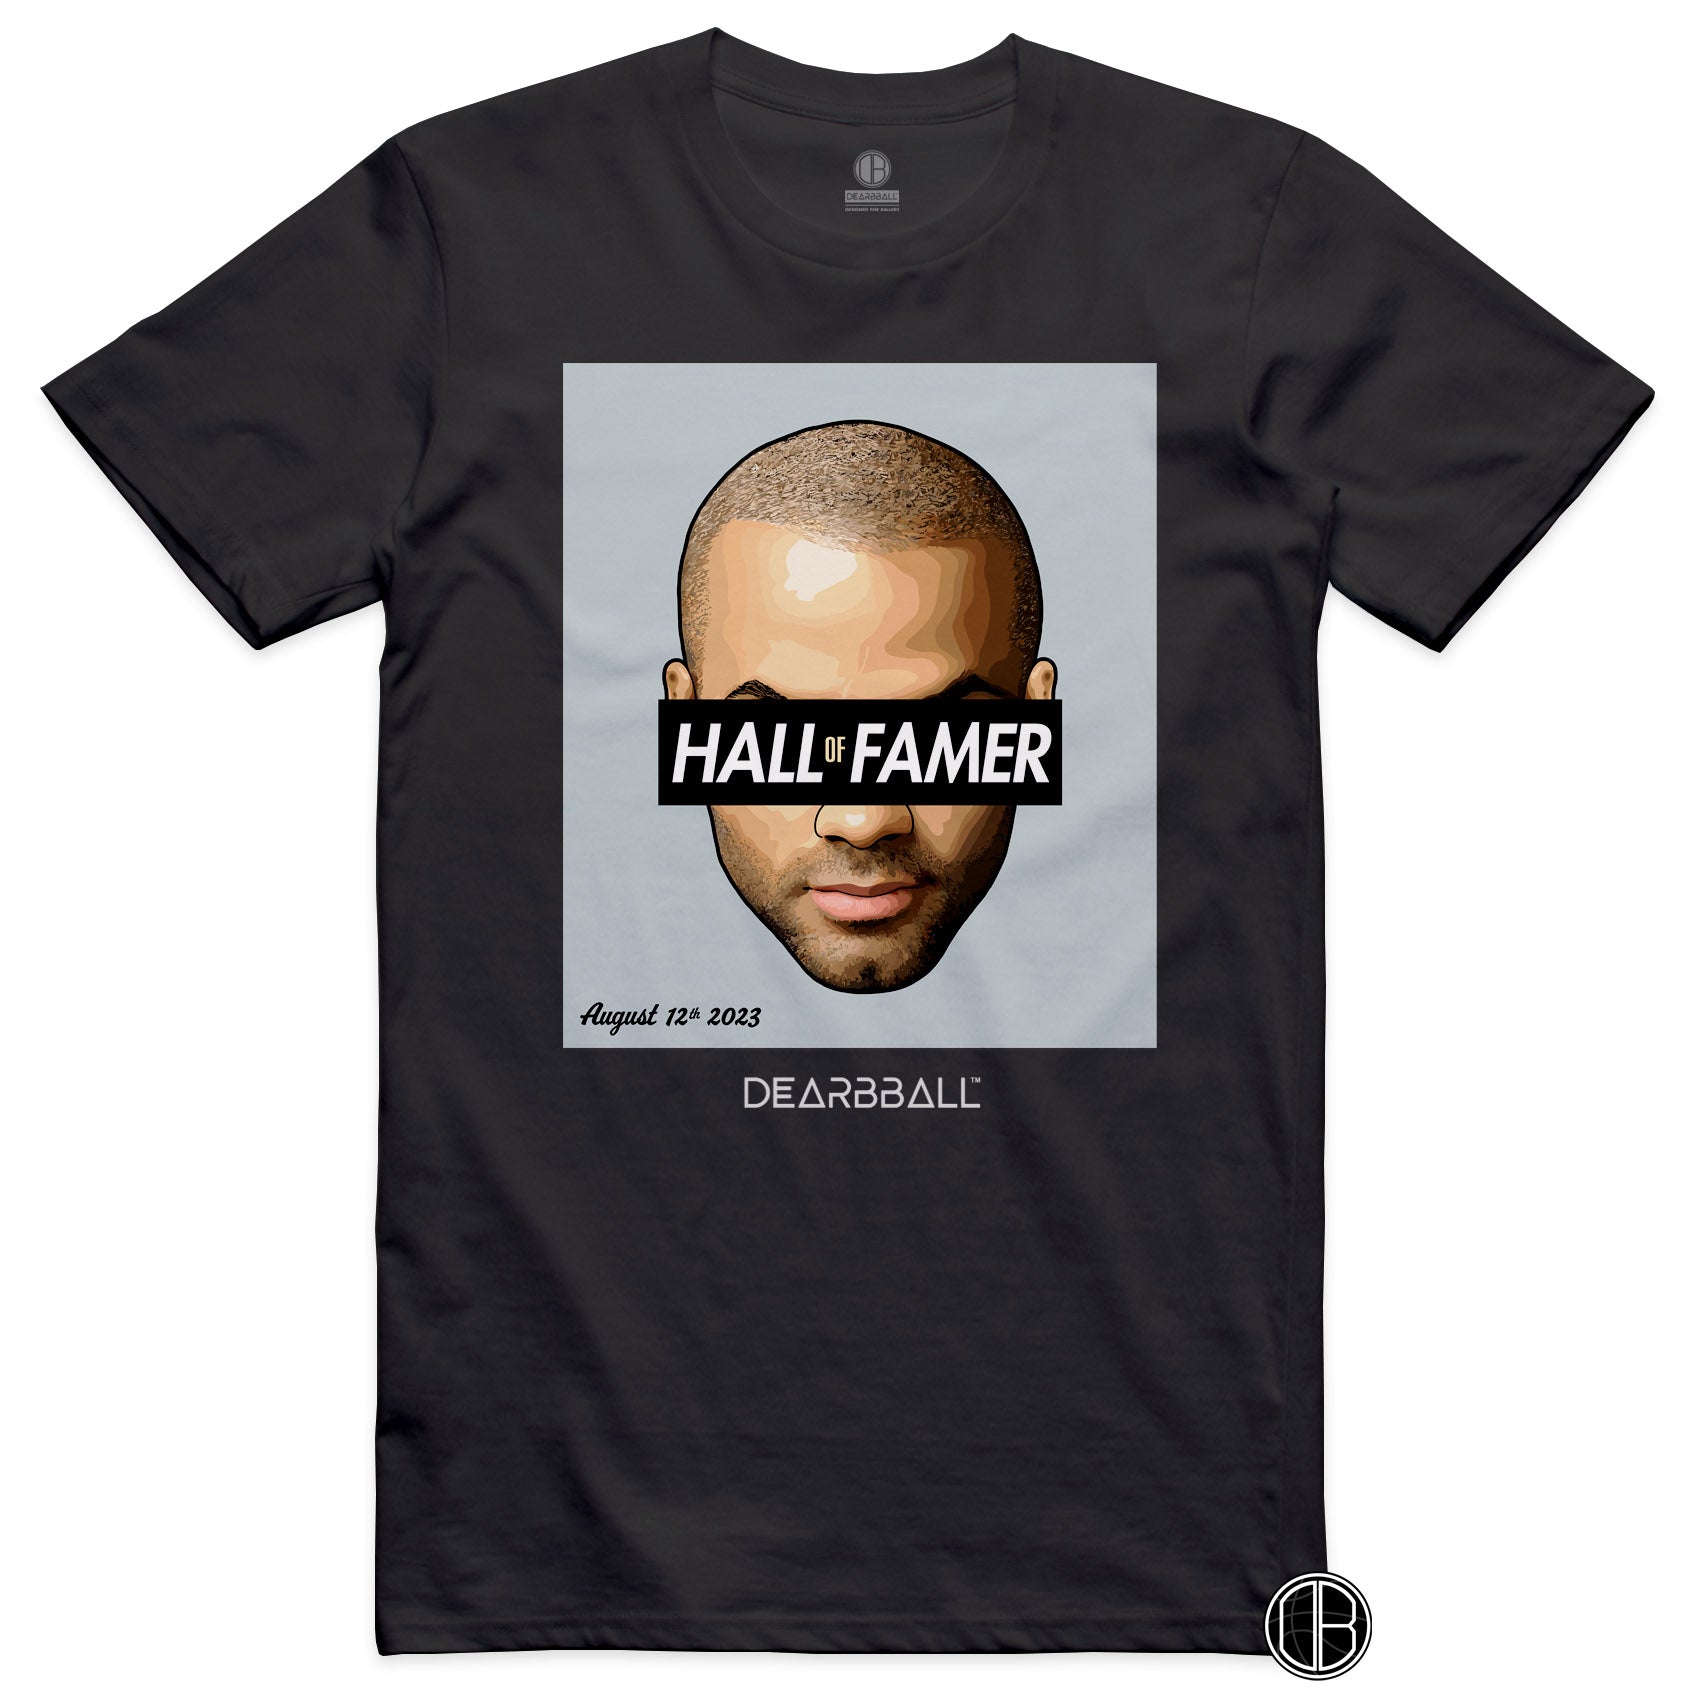 DearBBall T-Shirt - HALL of FAMER 12 August 23